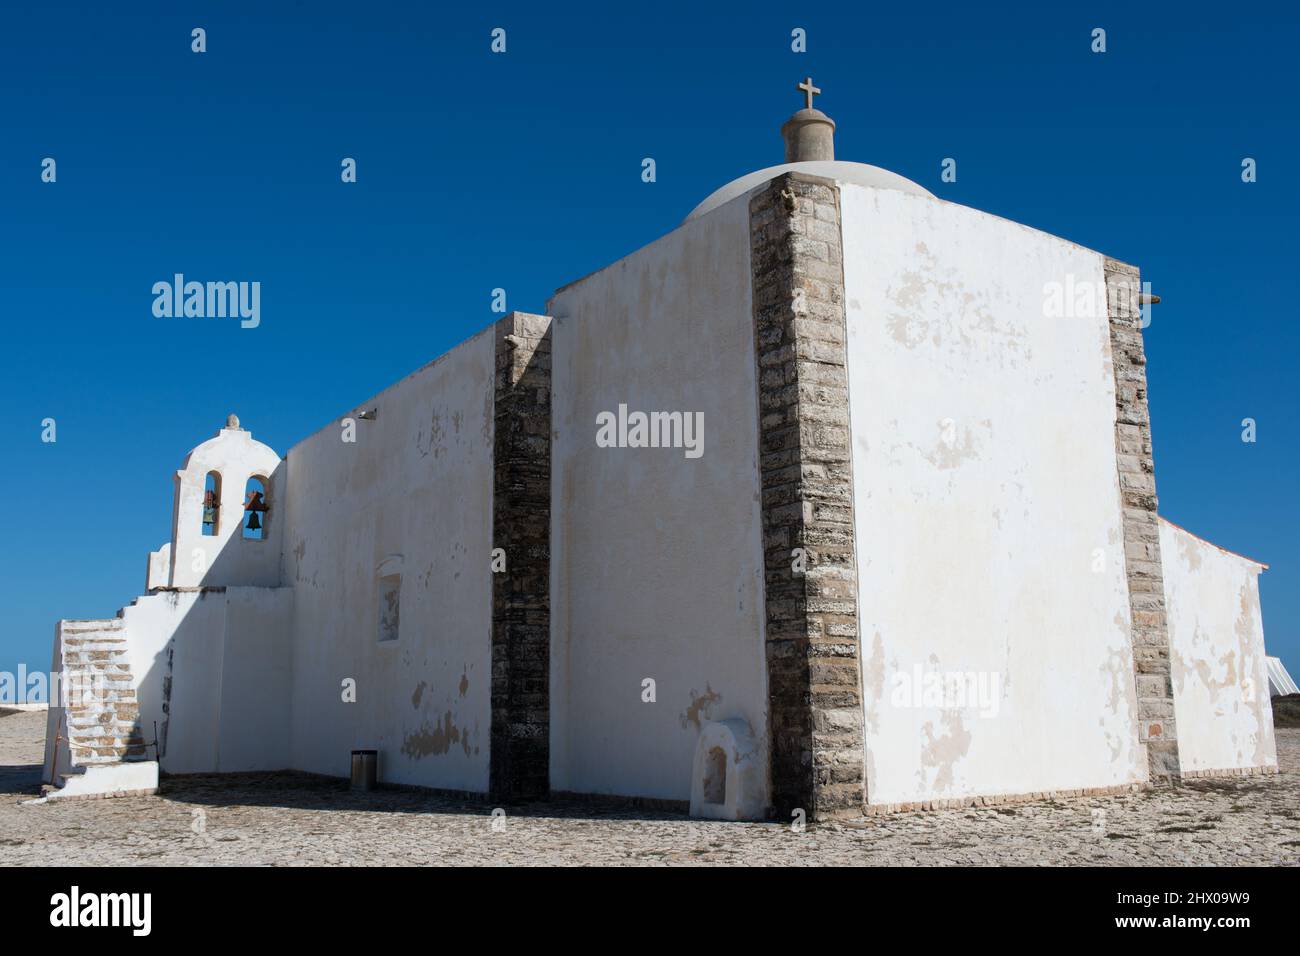 Bâtiment blanc à l'intérieur de la forteresse de Sagres. Église de notre Dame de grâce. Portugal, Europe Banque D'Images